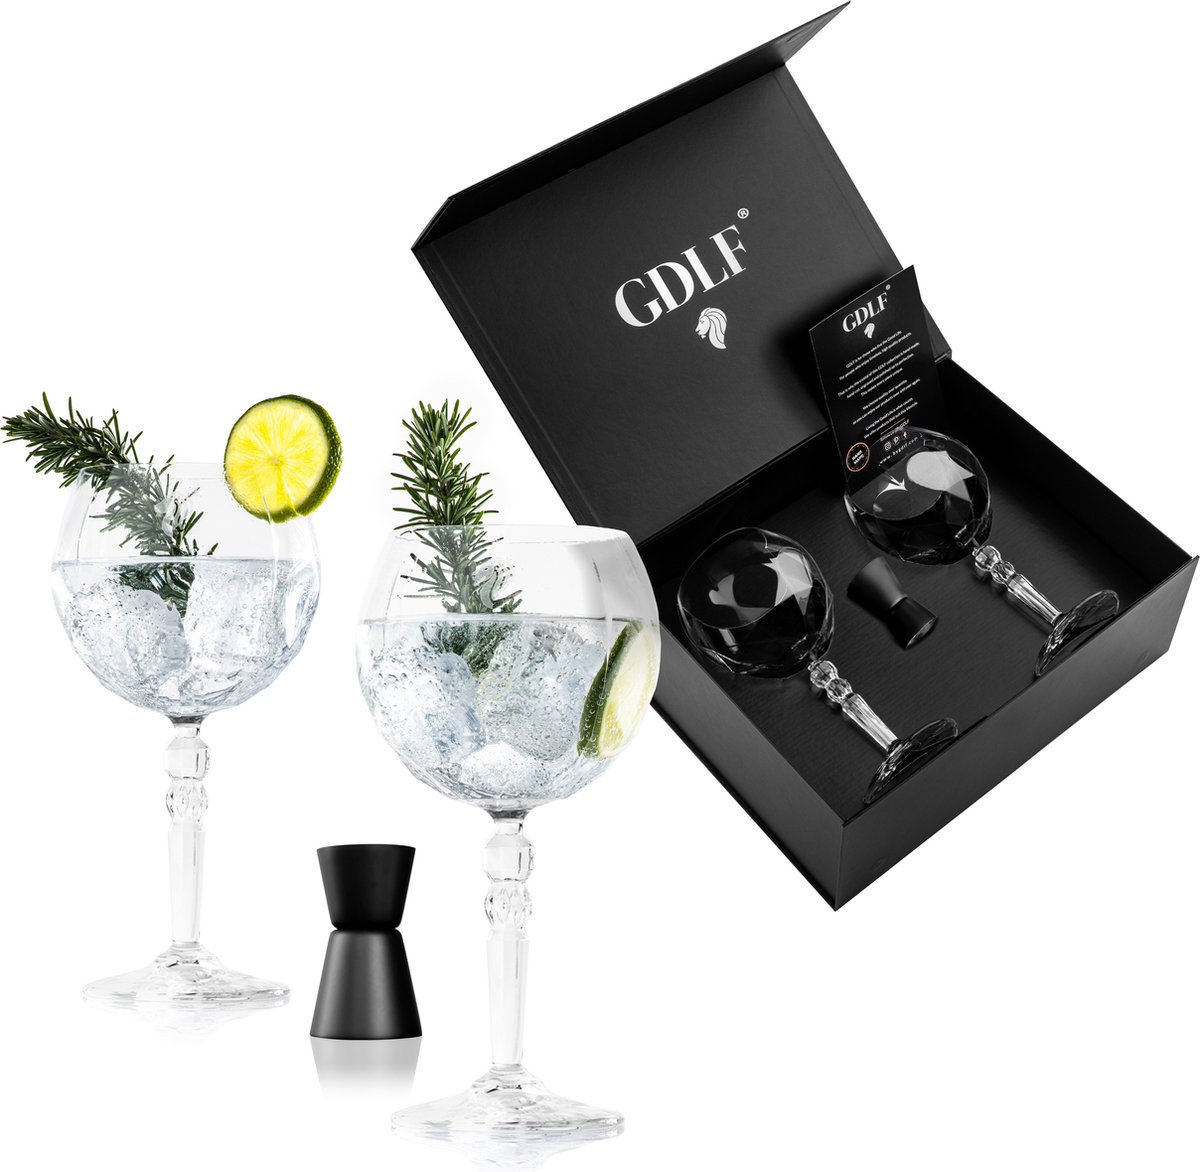 GDLF® Gin Tonic Glazen Set in Luxe Geschenkdoos | Incl. 2 Kristallen Gin Tonic Glazen, Zwarte RVS Maatbeker en Certificaat | Made in Italy | Loodvrij Kristal | 600ML | Cocktail Glazen Set | Aperol Spritz Glazen | Kerstpakket | Cadeau Voor Man & Vrouw